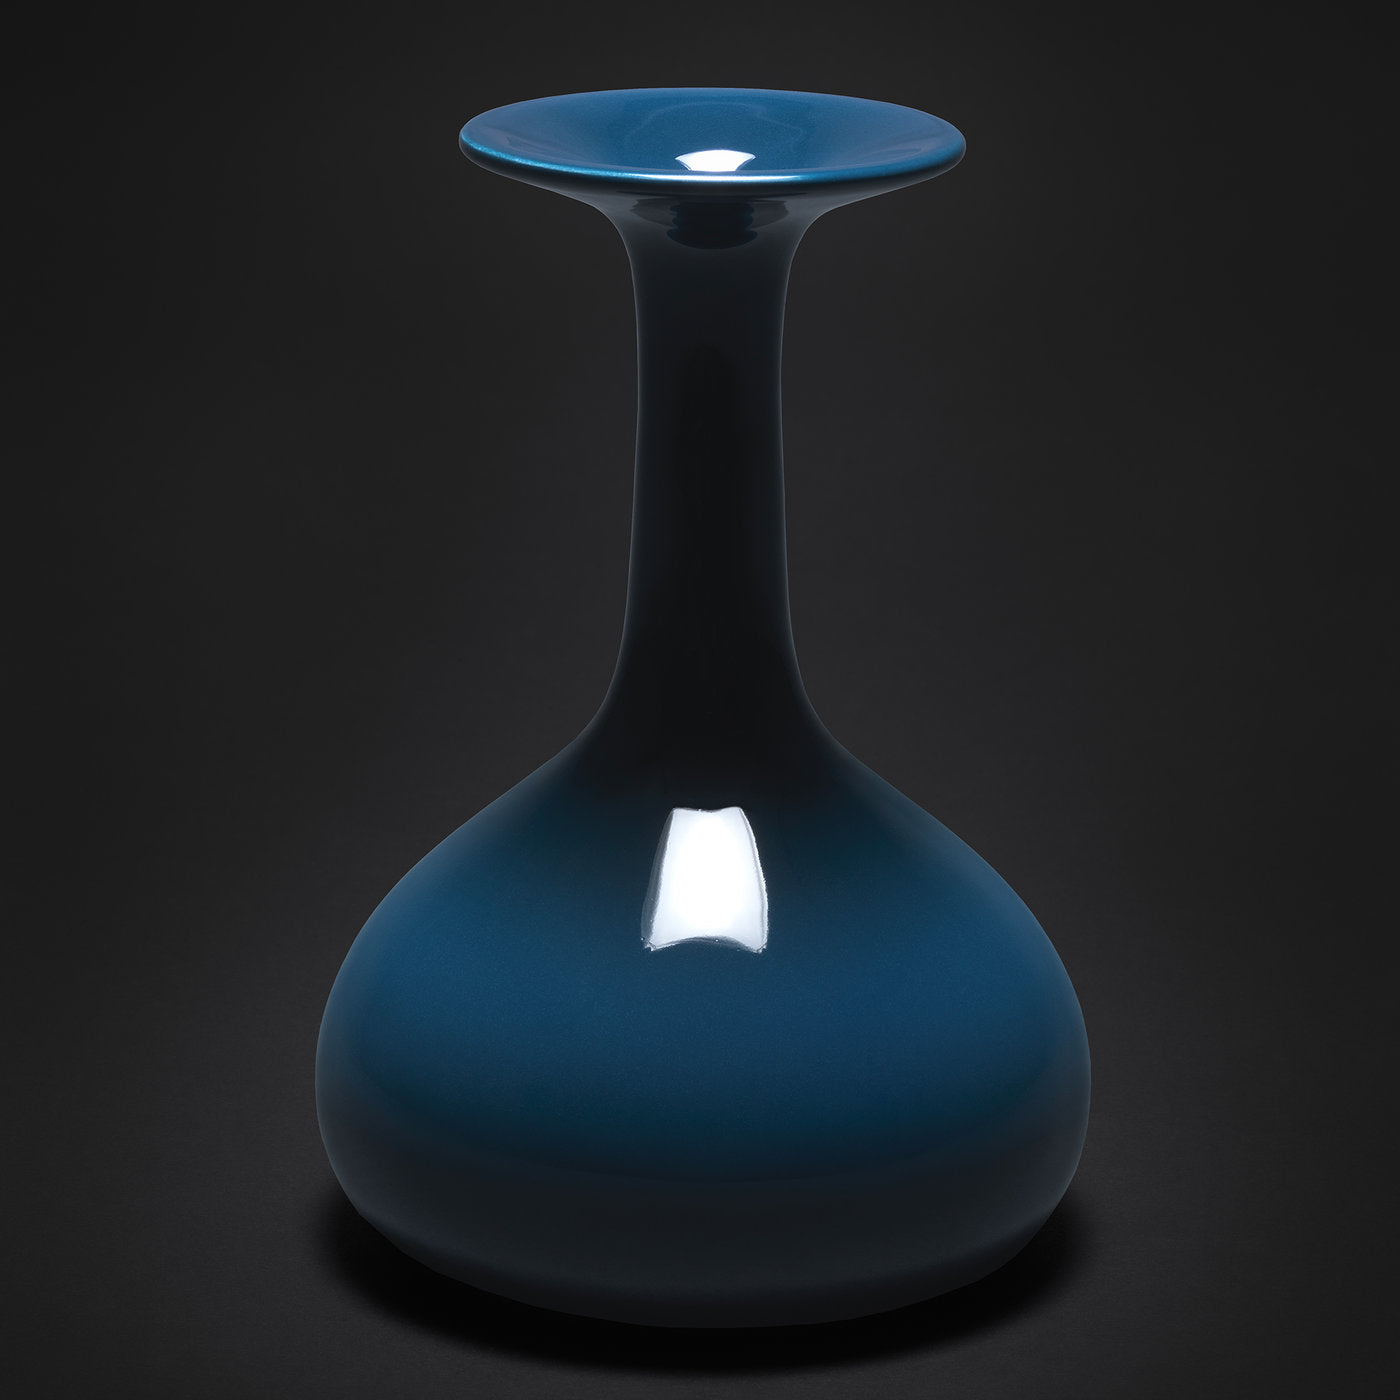 Ampollina Blue Vase by Corrado Corradi Dell’Acqua - Alternative view 1